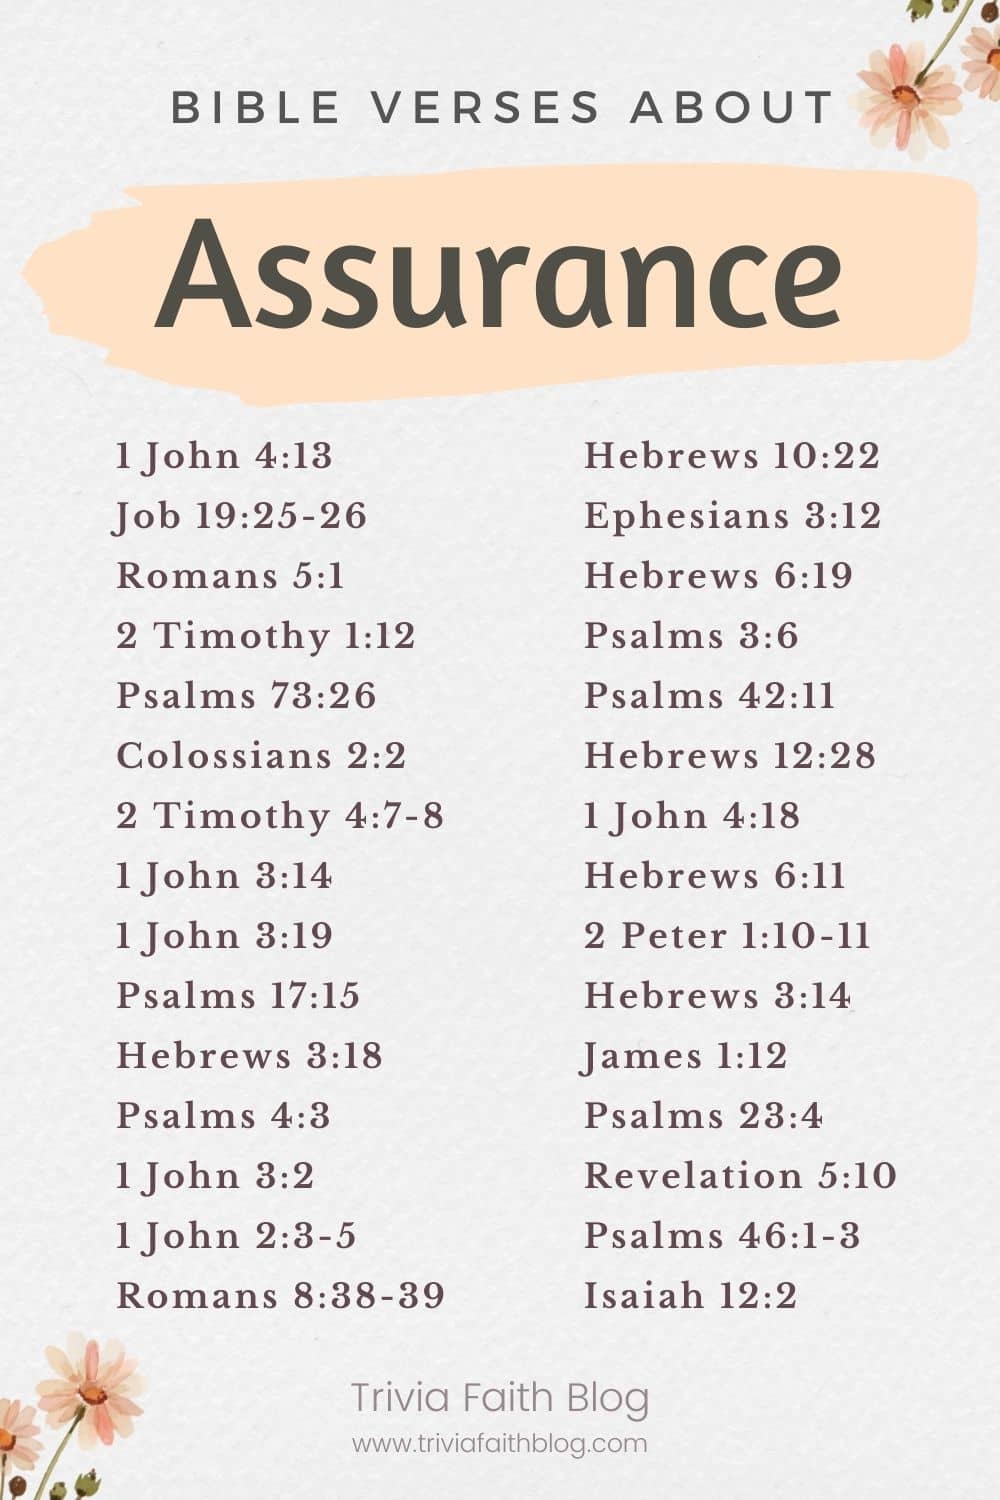 Bible verses about assurance kjv